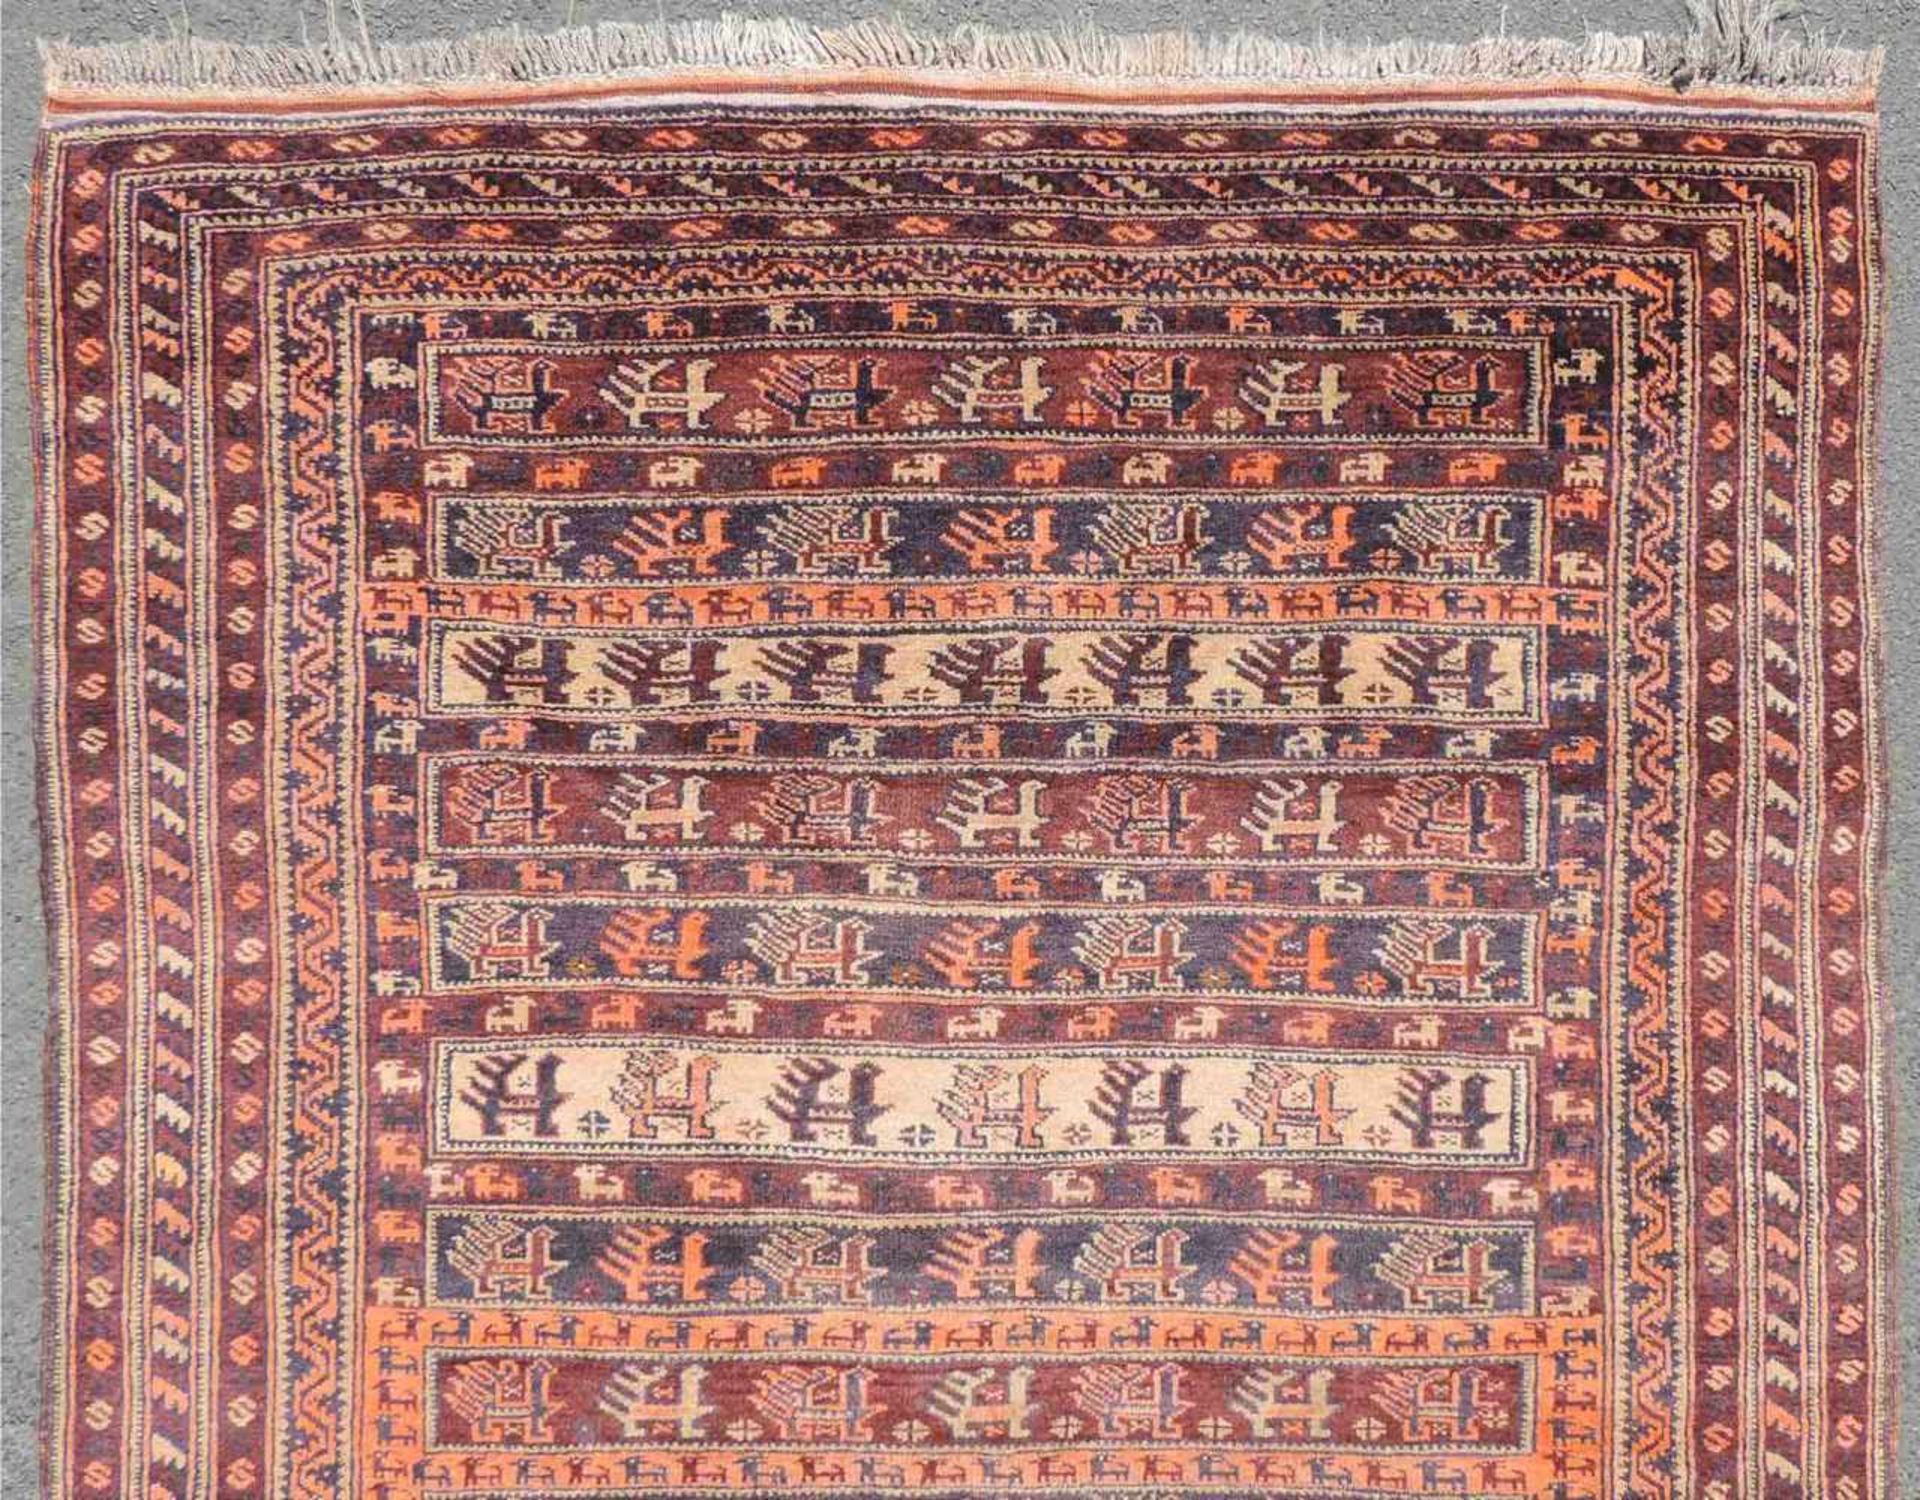 Belutsch Orientteppich. Afghanistan. Alt, um 1930. 188 cm x 122 cm. Handgeknüpft. Wolle auf Wolle. - Bild 3 aus 6